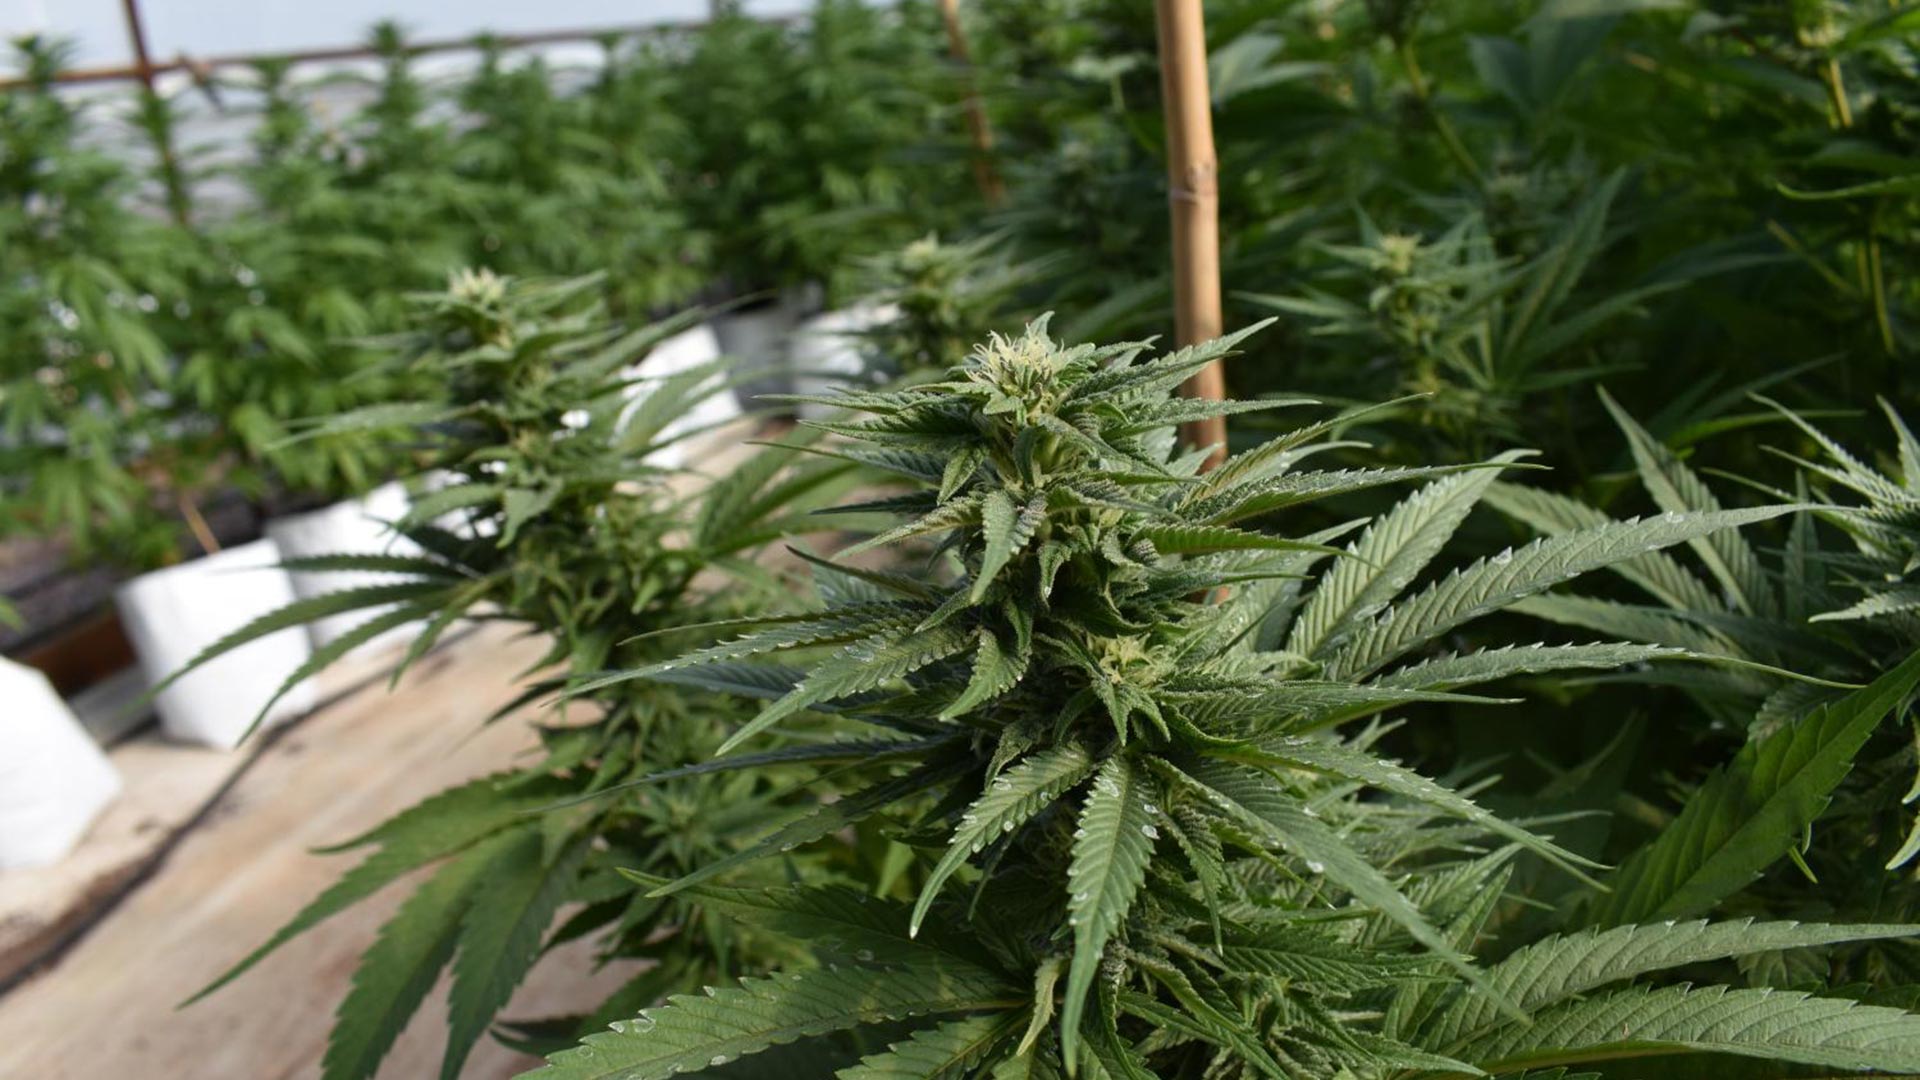 Organic marijuana being grown at an Arizona farm for processing into medical marijuana vapor fluids and pills.
